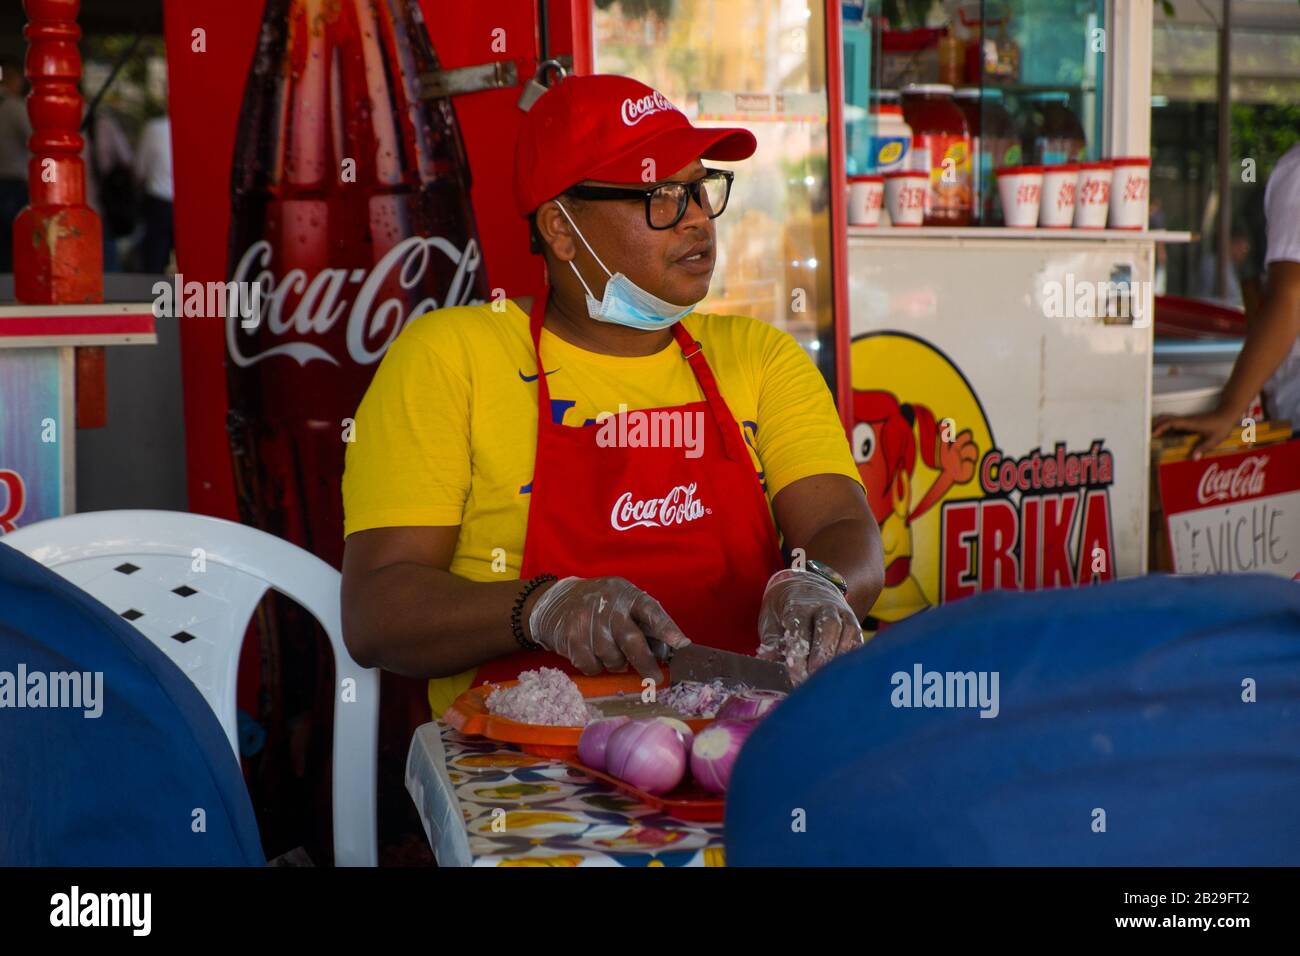 Ein Mann trägt eine Gesichtsmaske, während er auf einem Lebensmittelstand in Cartagena, Kolumbien, Zwiebeln für Ceviche hackt Stockfoto